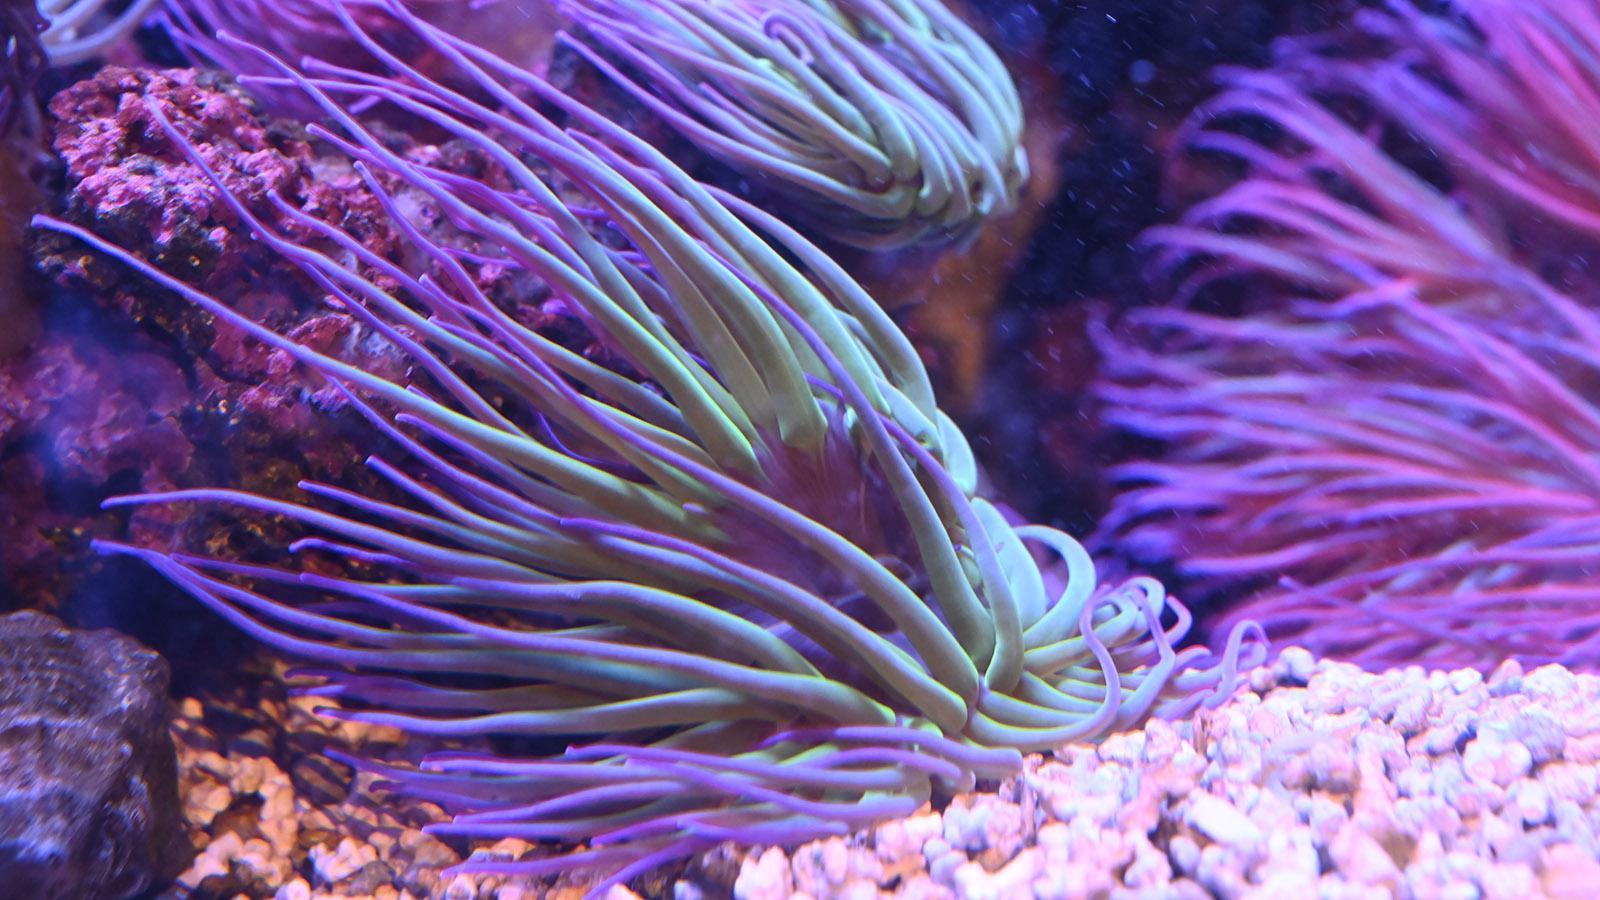 Anemonen, farbig angestrahlt im Aquarium. Einige Arten leuchten in der Tiefe. Foto: Hilke Maunder